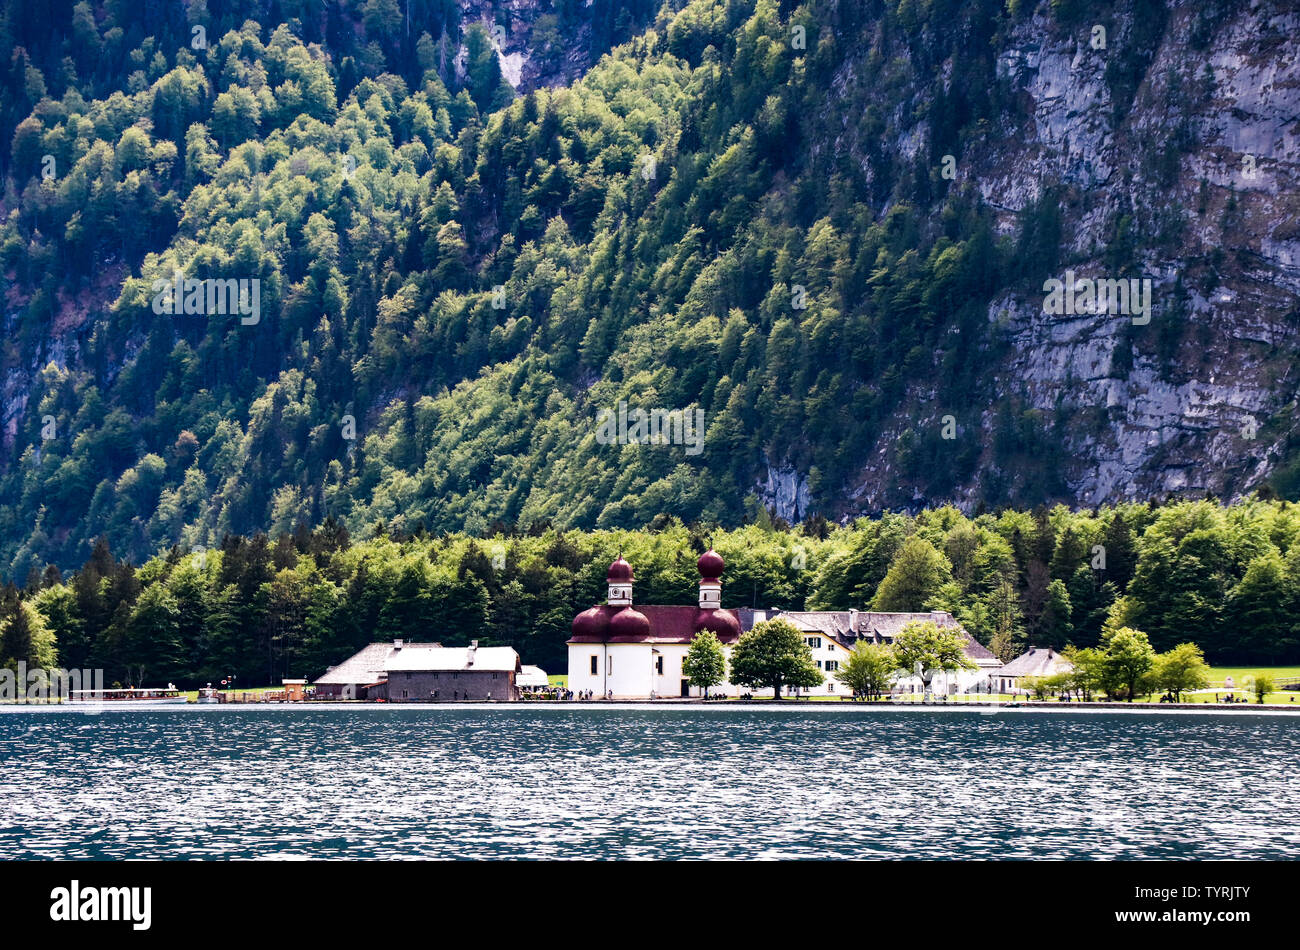 Wonderful St Bartholoma church with alpine lake Konigsee, Bavaria, Germany. Stock Photo